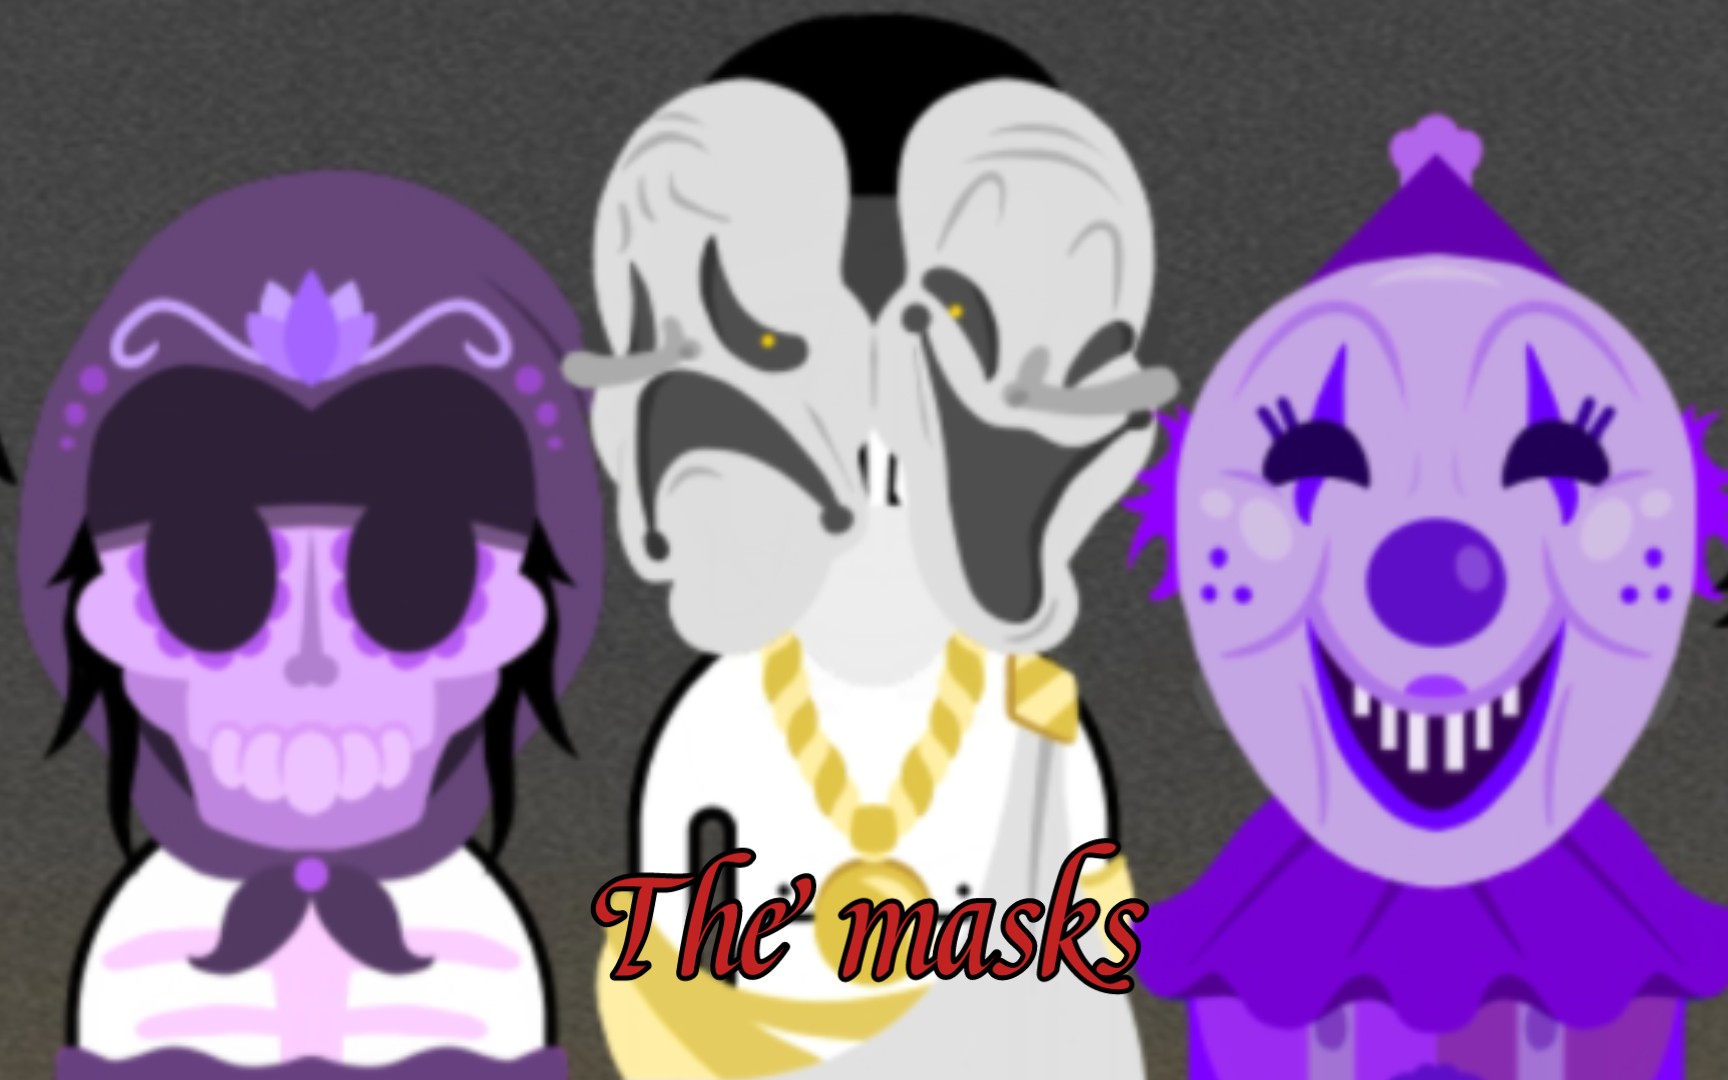 「The masks」 一场以假面舞会为表的阴谋